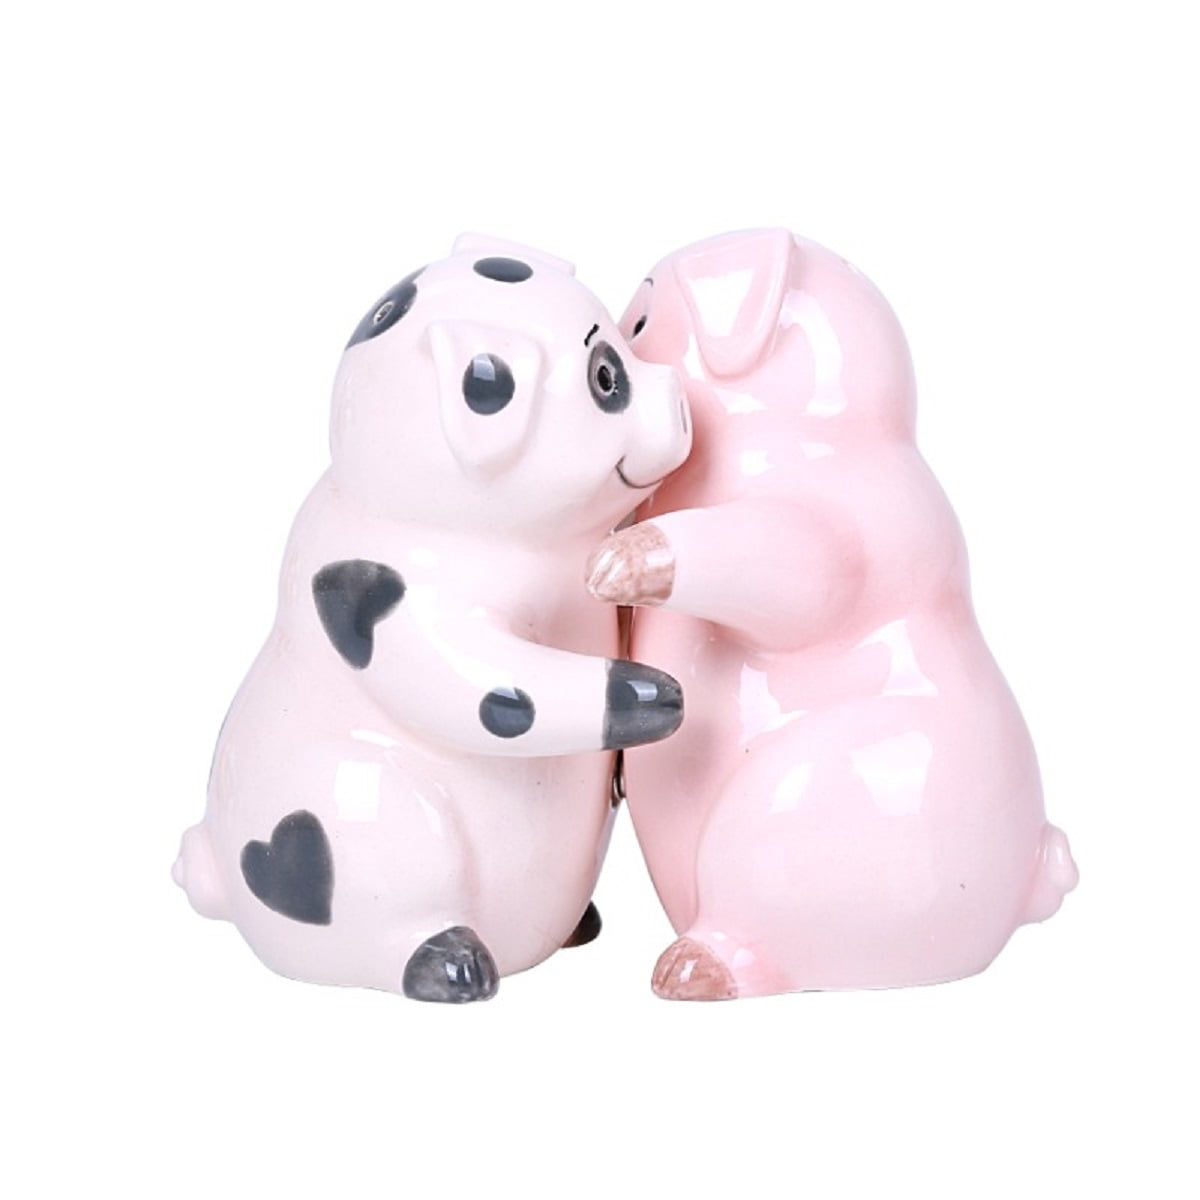 Hugging Pigs Ceramic Salt and Pepper Shakers Magnetic - Walmart.com